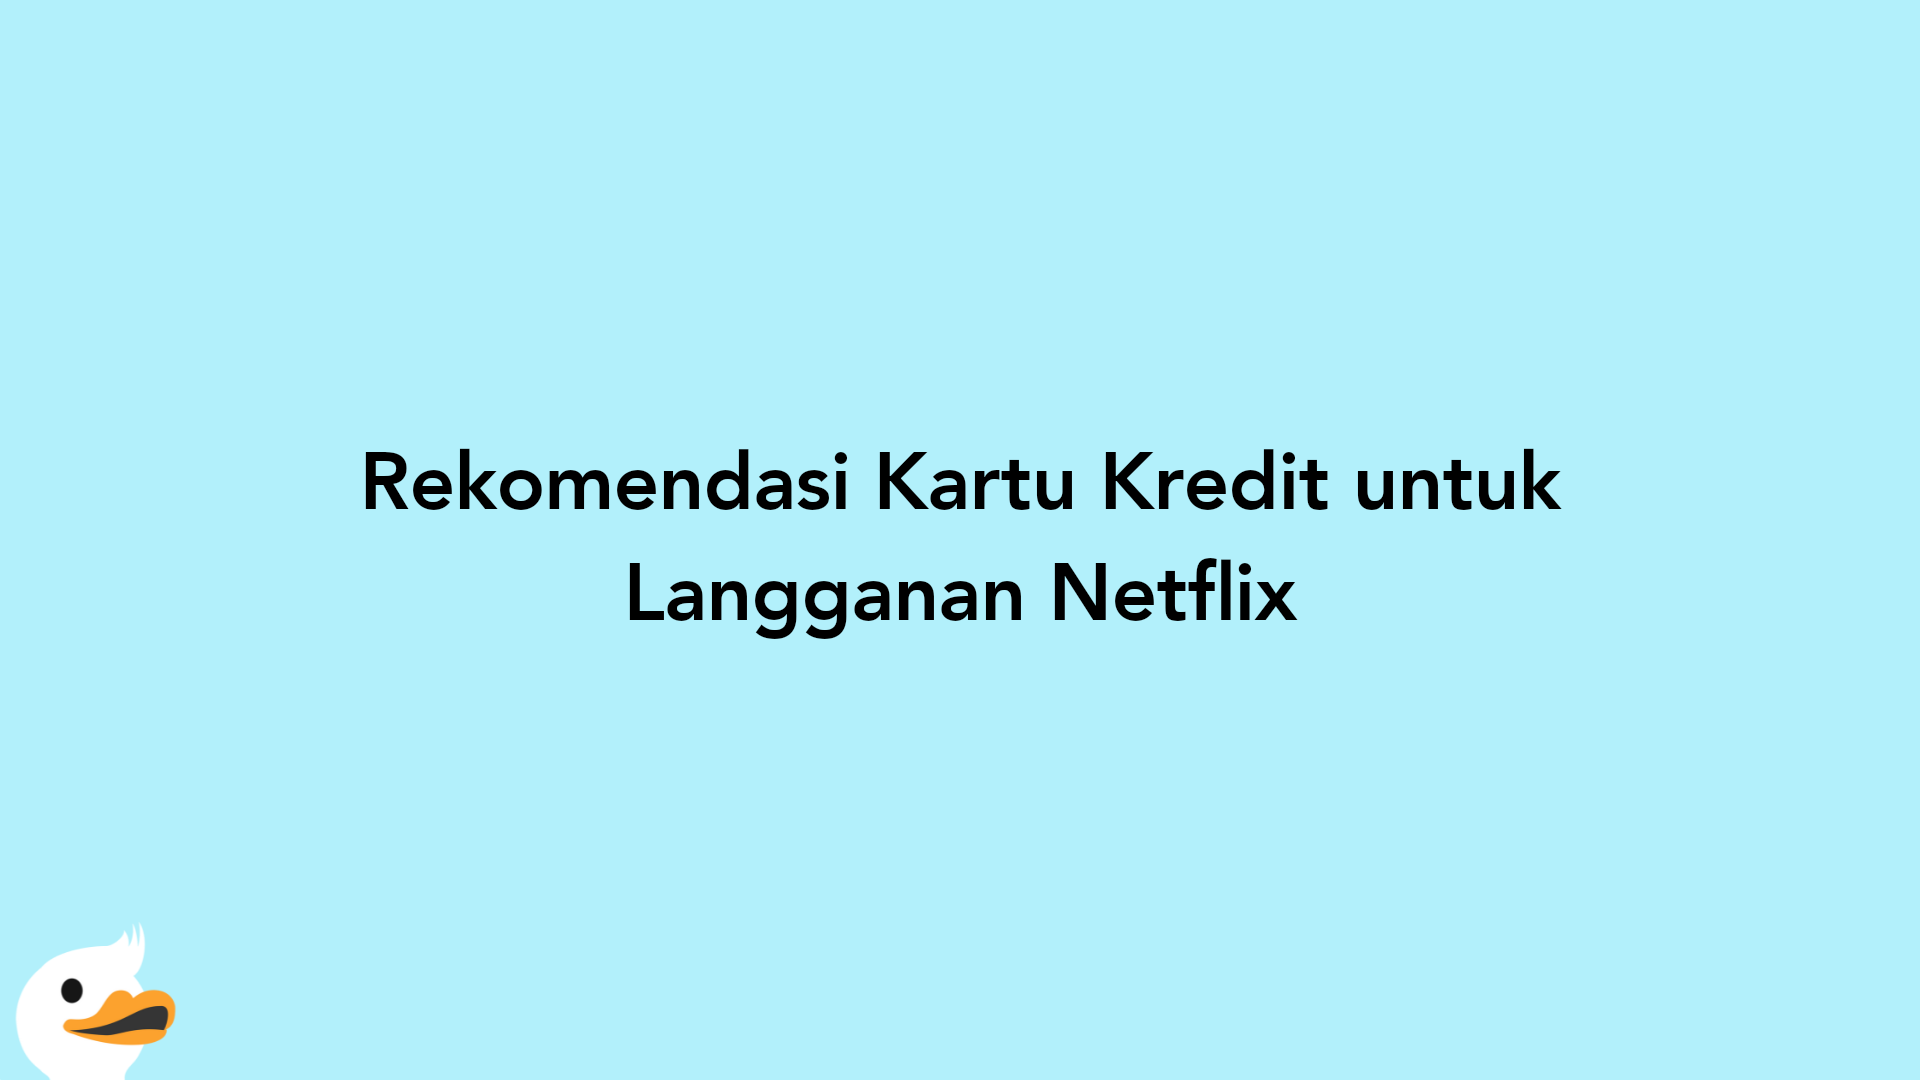 Rekomendasi Kartu Kredit untuk Langganan Netflix